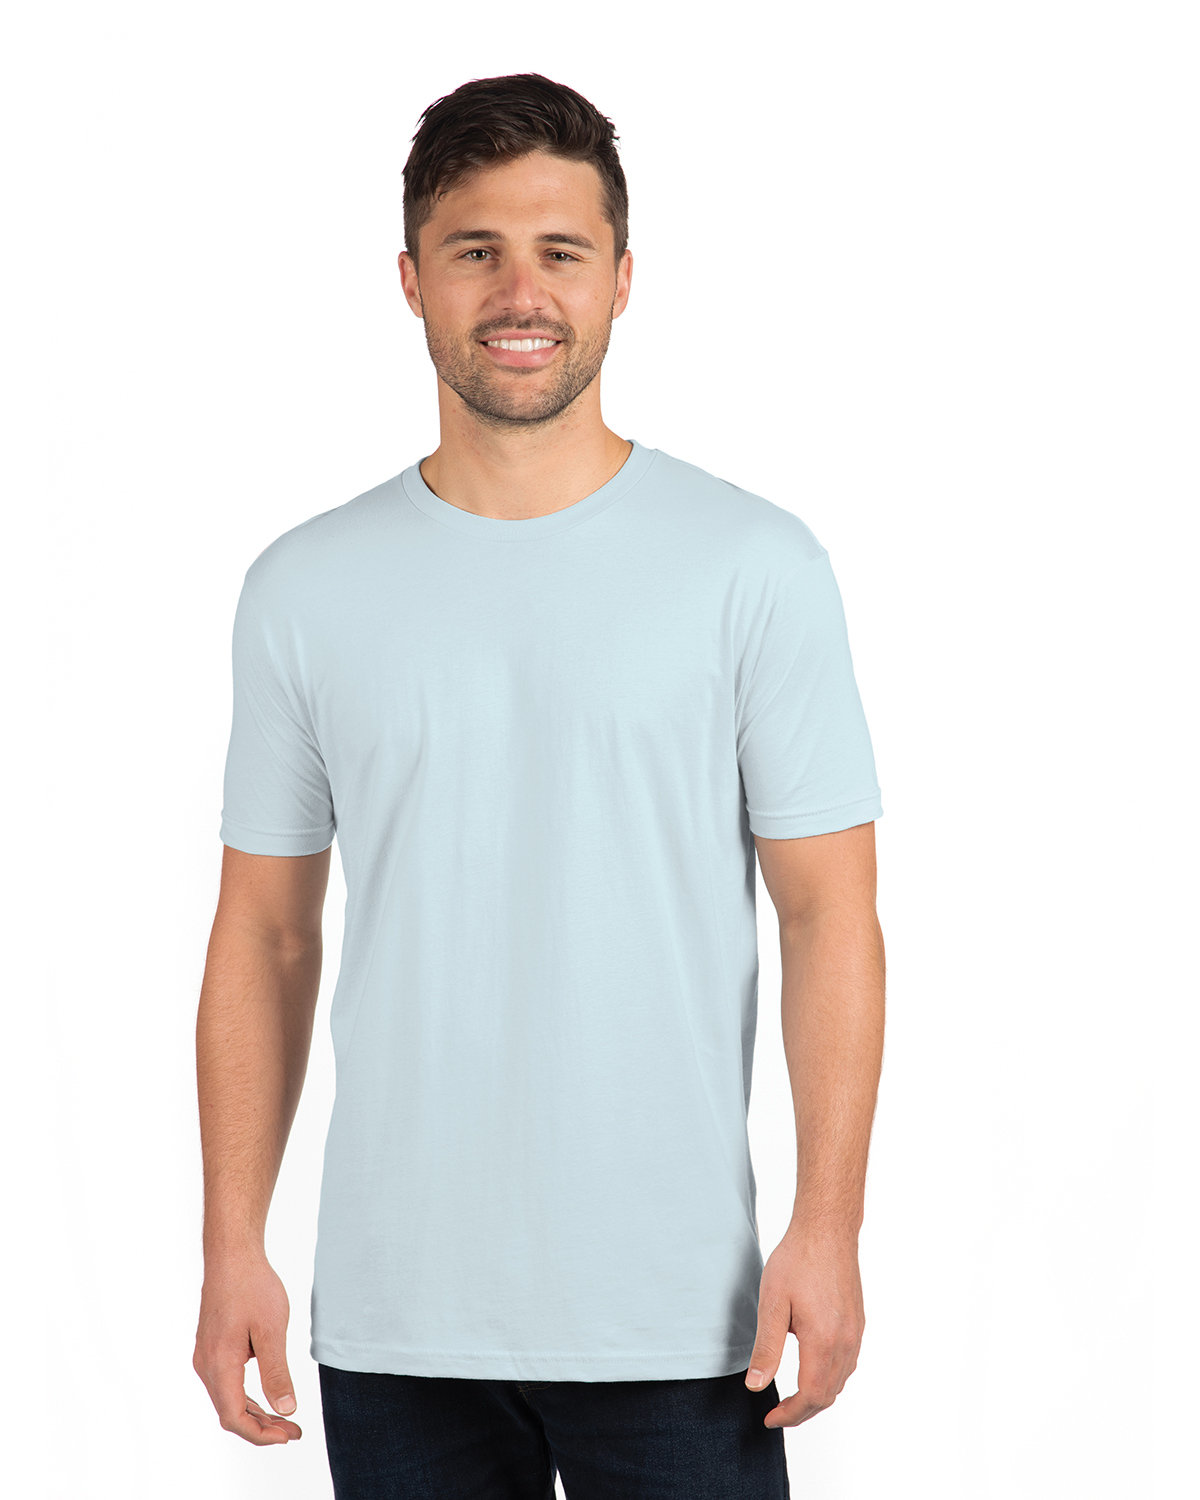 Next Level Unisex Cotton T-Shirt LIGHT BLUE 